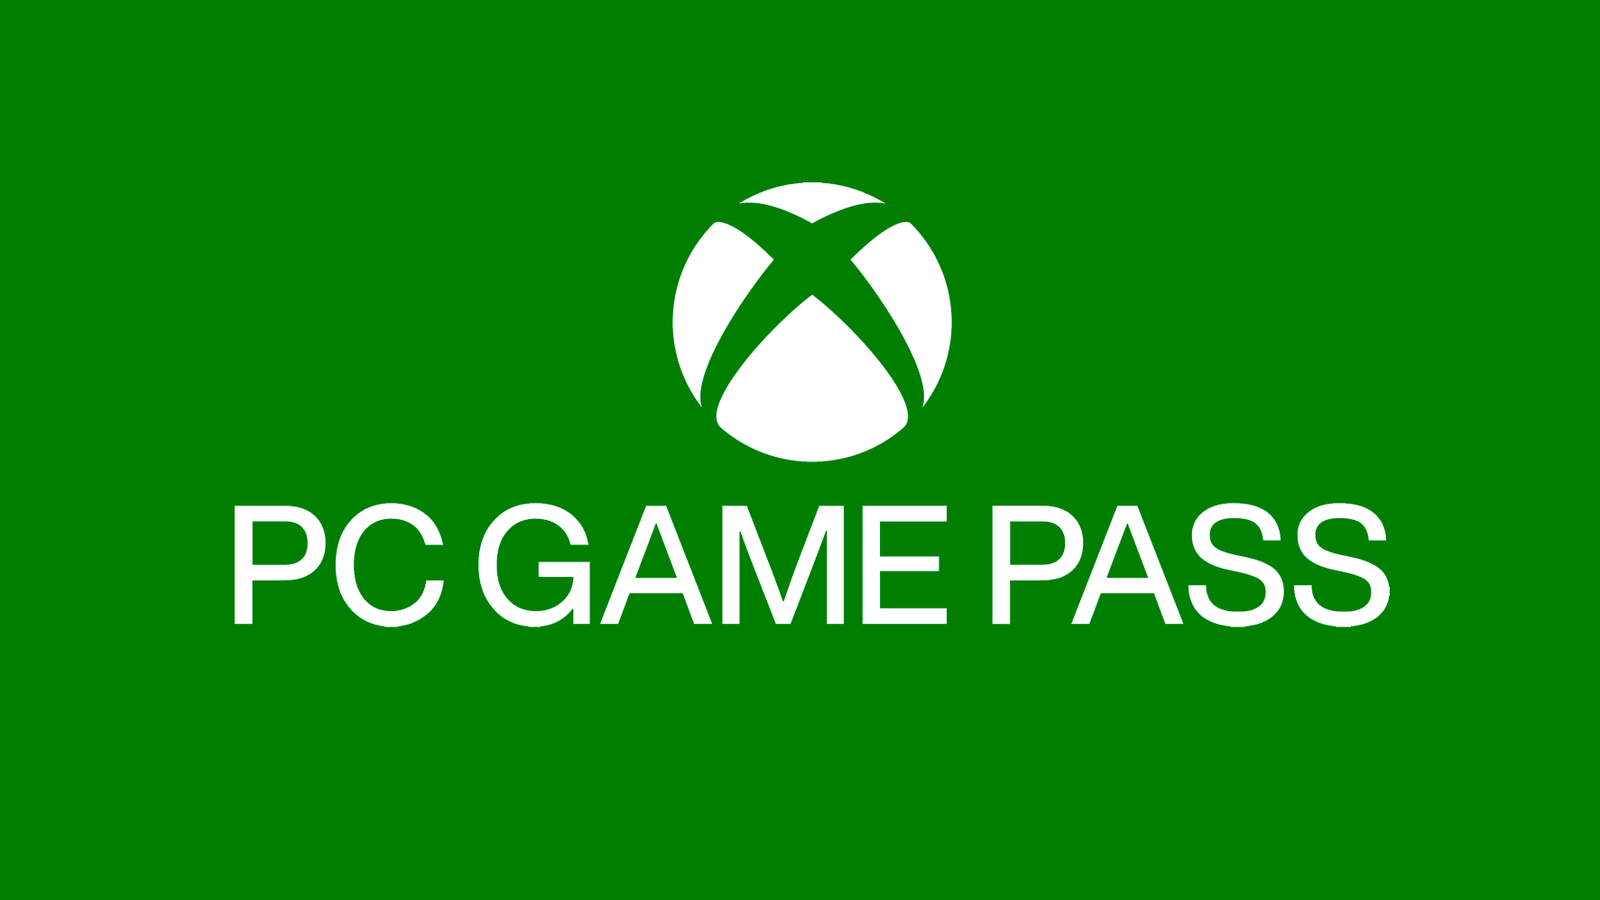 Hot Sale 2022: 21 juegos para Xbox One y Xbox Series X/S con descuento en   México: Halo Infinite, GTA y Elden Ring en oferta